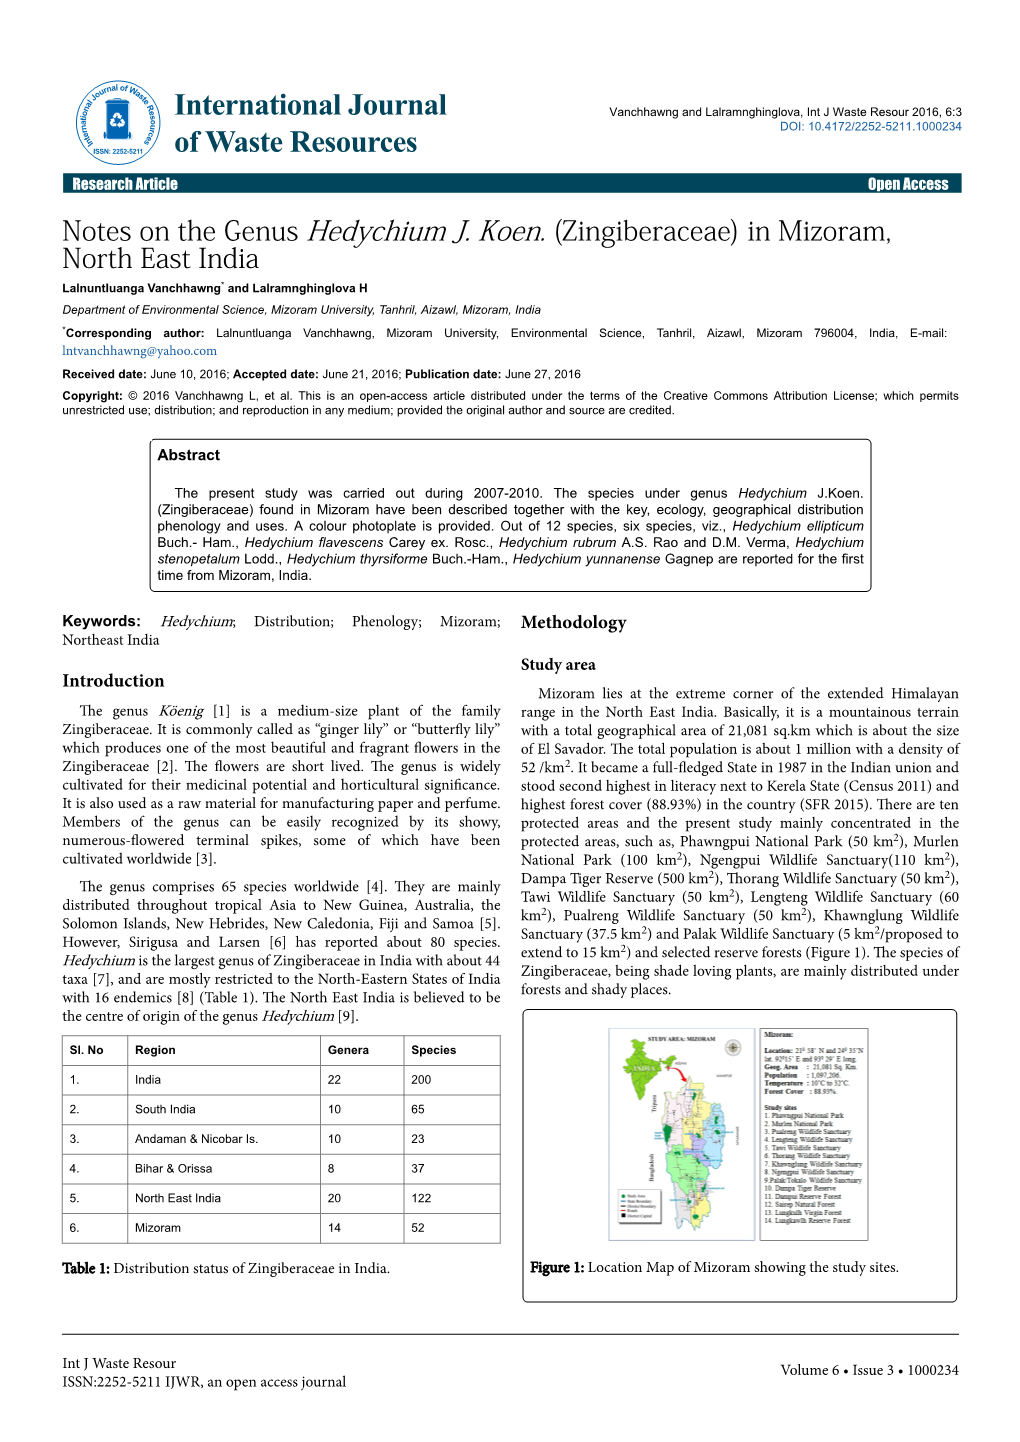 Notes on the Genus Hedychium J. Koen. (Zingiberaceae) in Mizoram, North East India